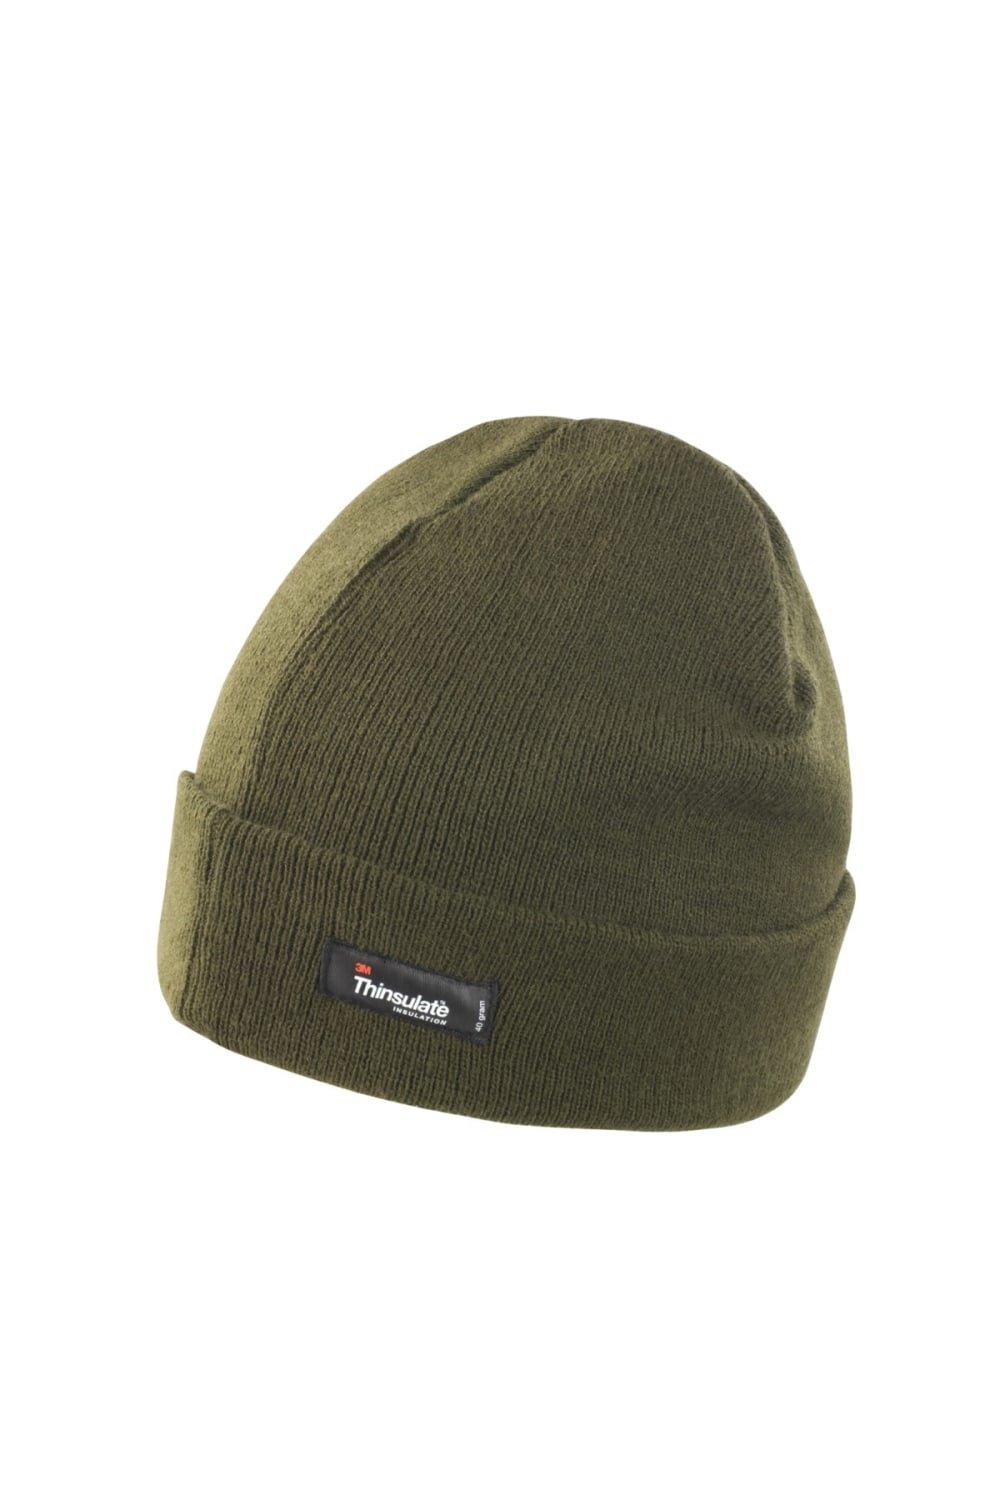 Легкая термозимняя шапка Thinsulate (3M, 40 г) (2 шт. в упаковке) Result, зеленый фото